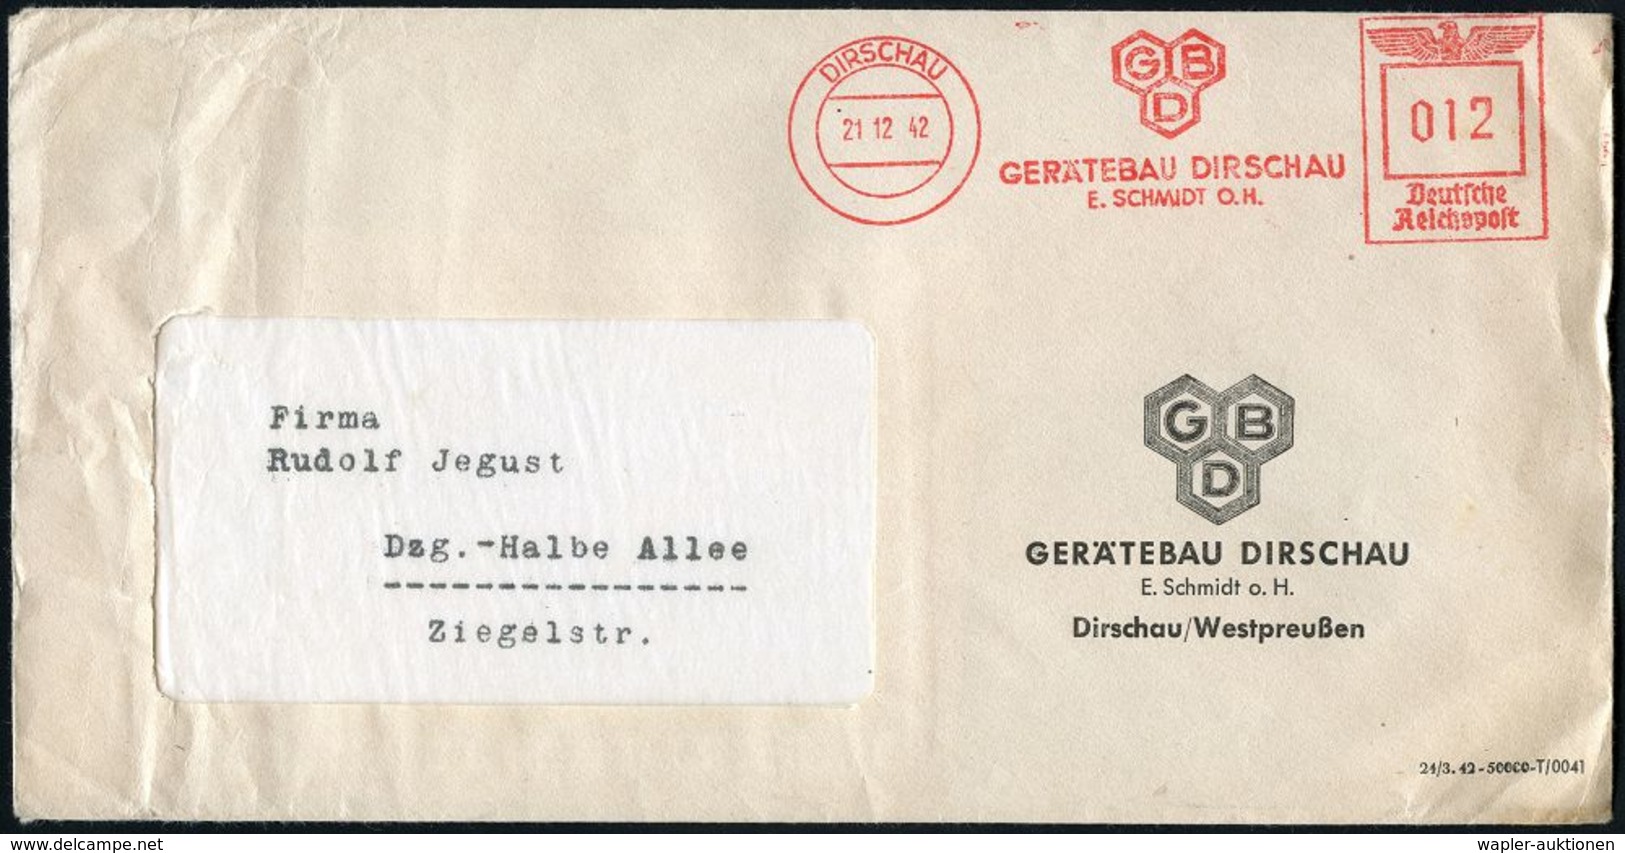 MILITÄRFLUGWESEN / MILITÄRFLUGZEUGE : DIRSCHAU/ GBD/ GERÄTEBAU DIRSCHU/ E.SCHMIDT O.H. 1942 (21.12.) Sehr Seltener AFS ( - Aerei